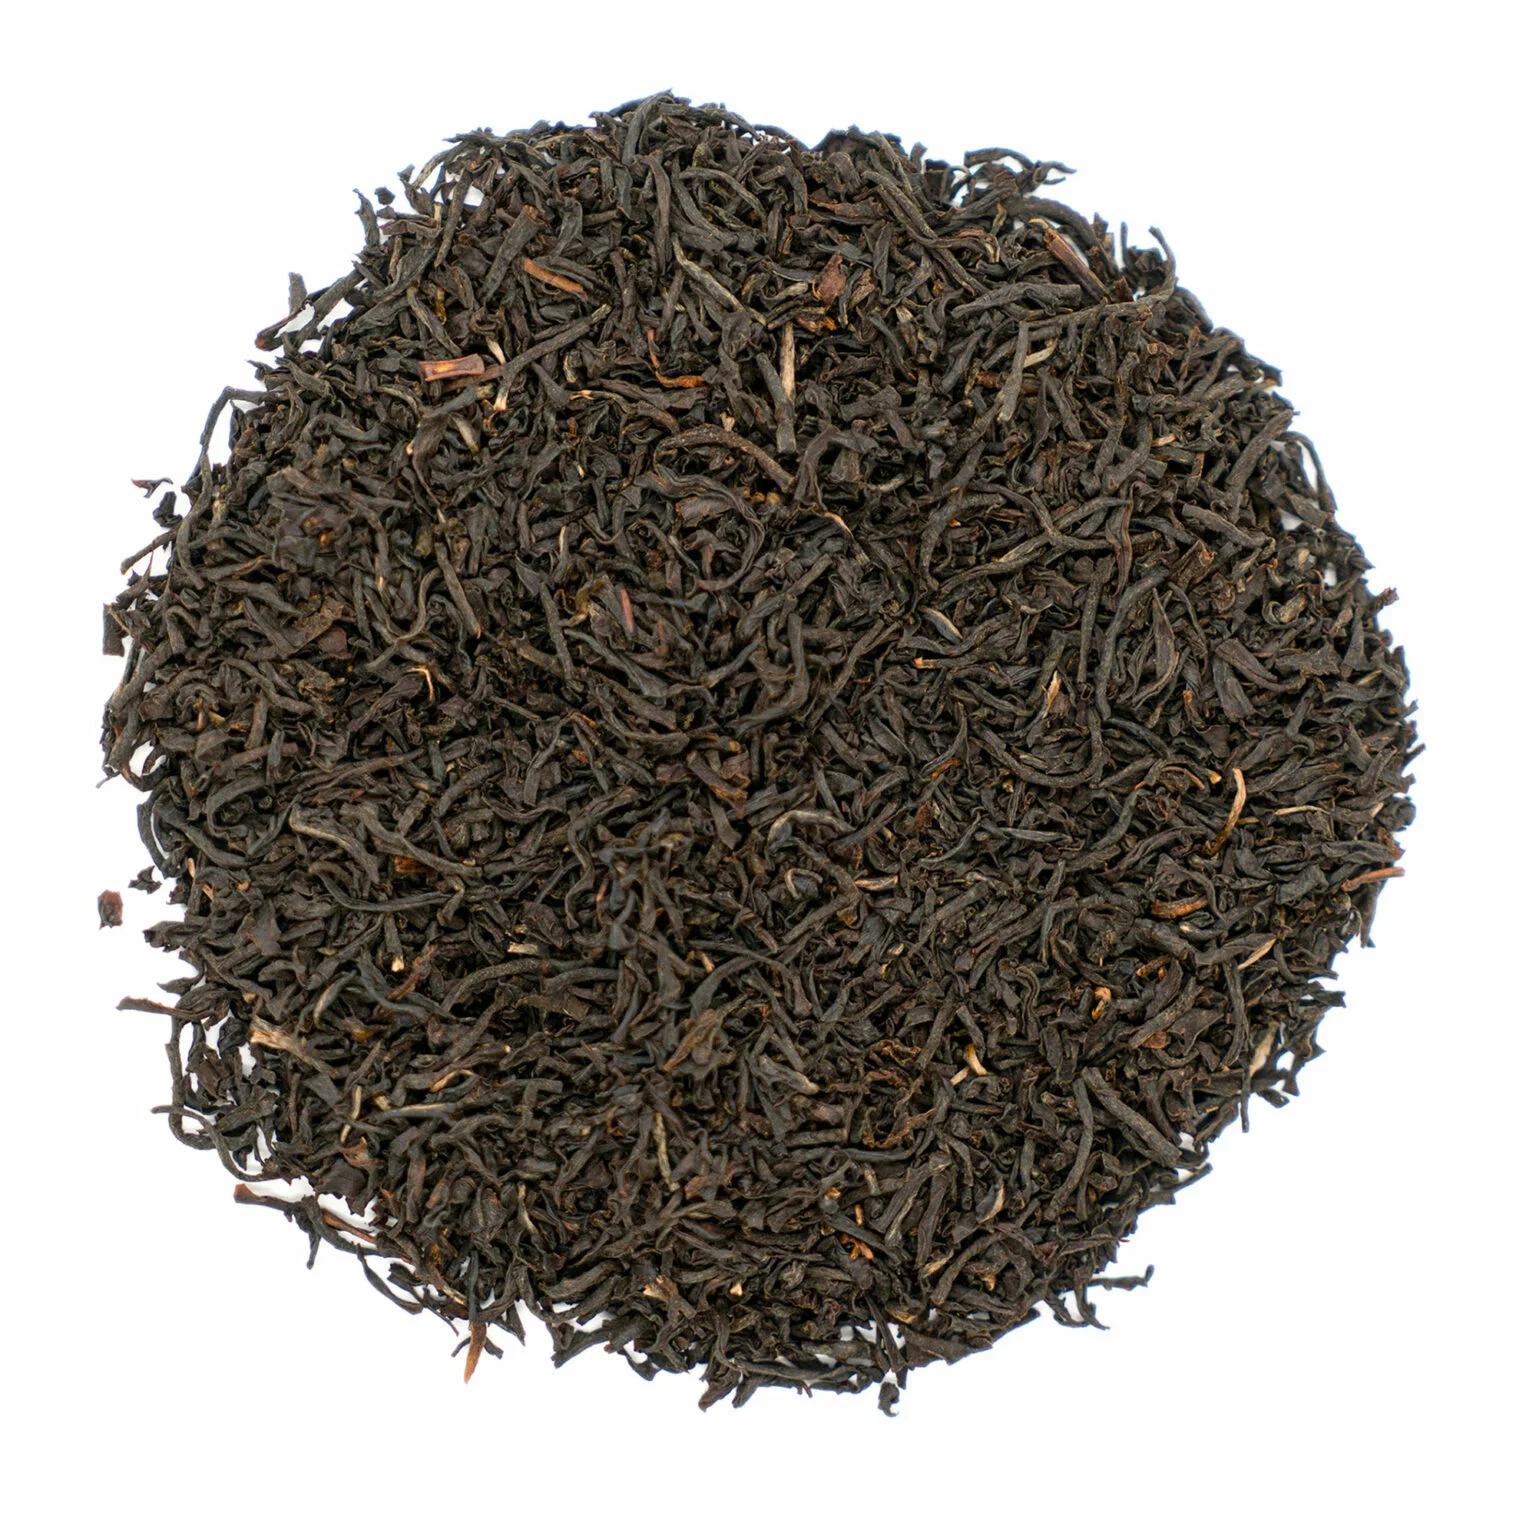 Herbata Ruanda Rukeri - Intensywny smak i wyjątkowy aromat